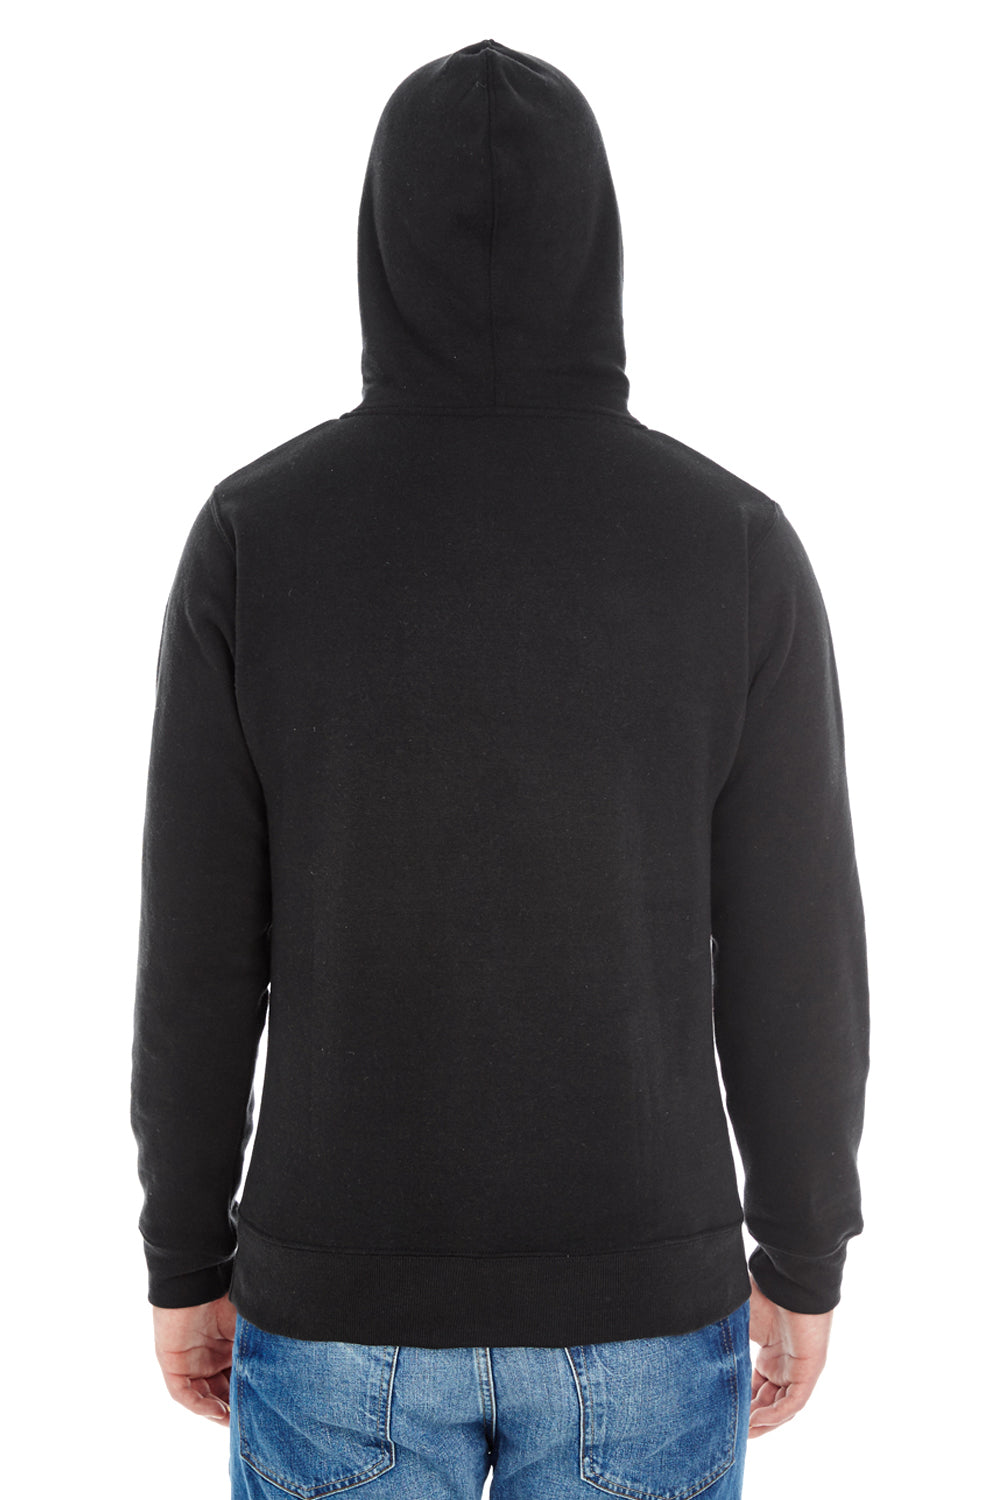 J America JA8871 Mens Fleece Hooded Sweatshirt Hoodie Solid Black Back